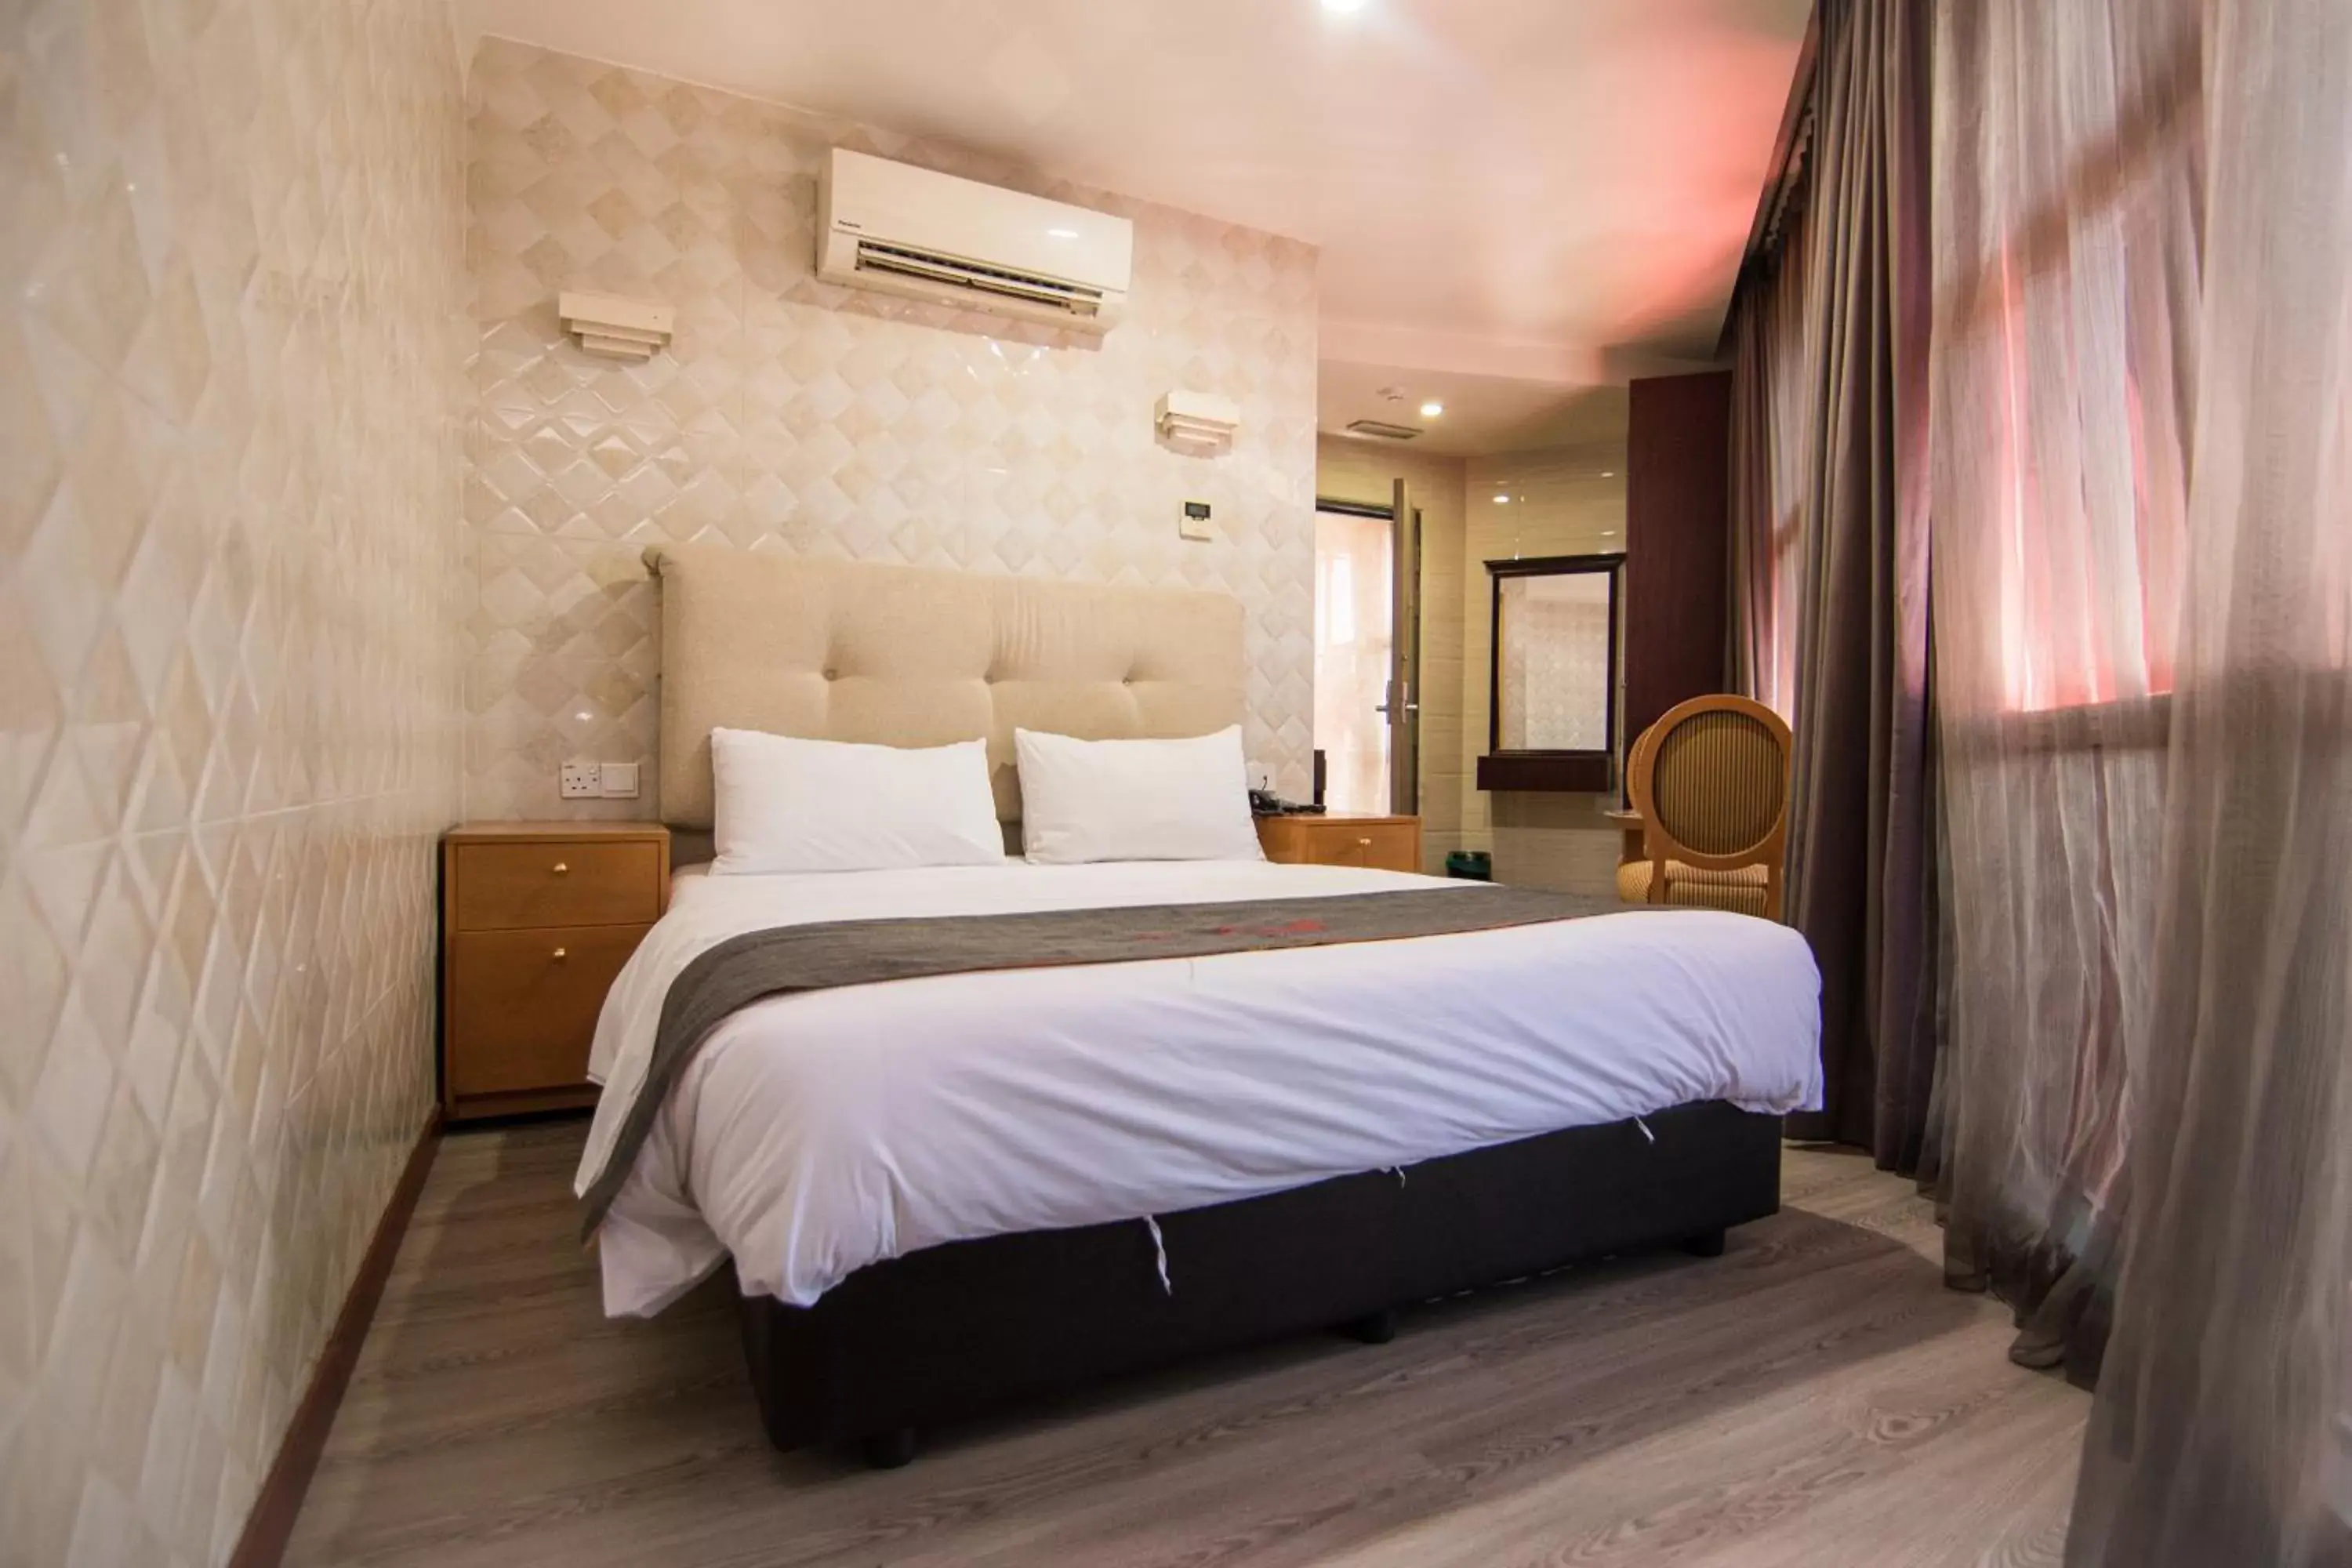 Standard Queen Room in Suwara Hotel Kepong KL